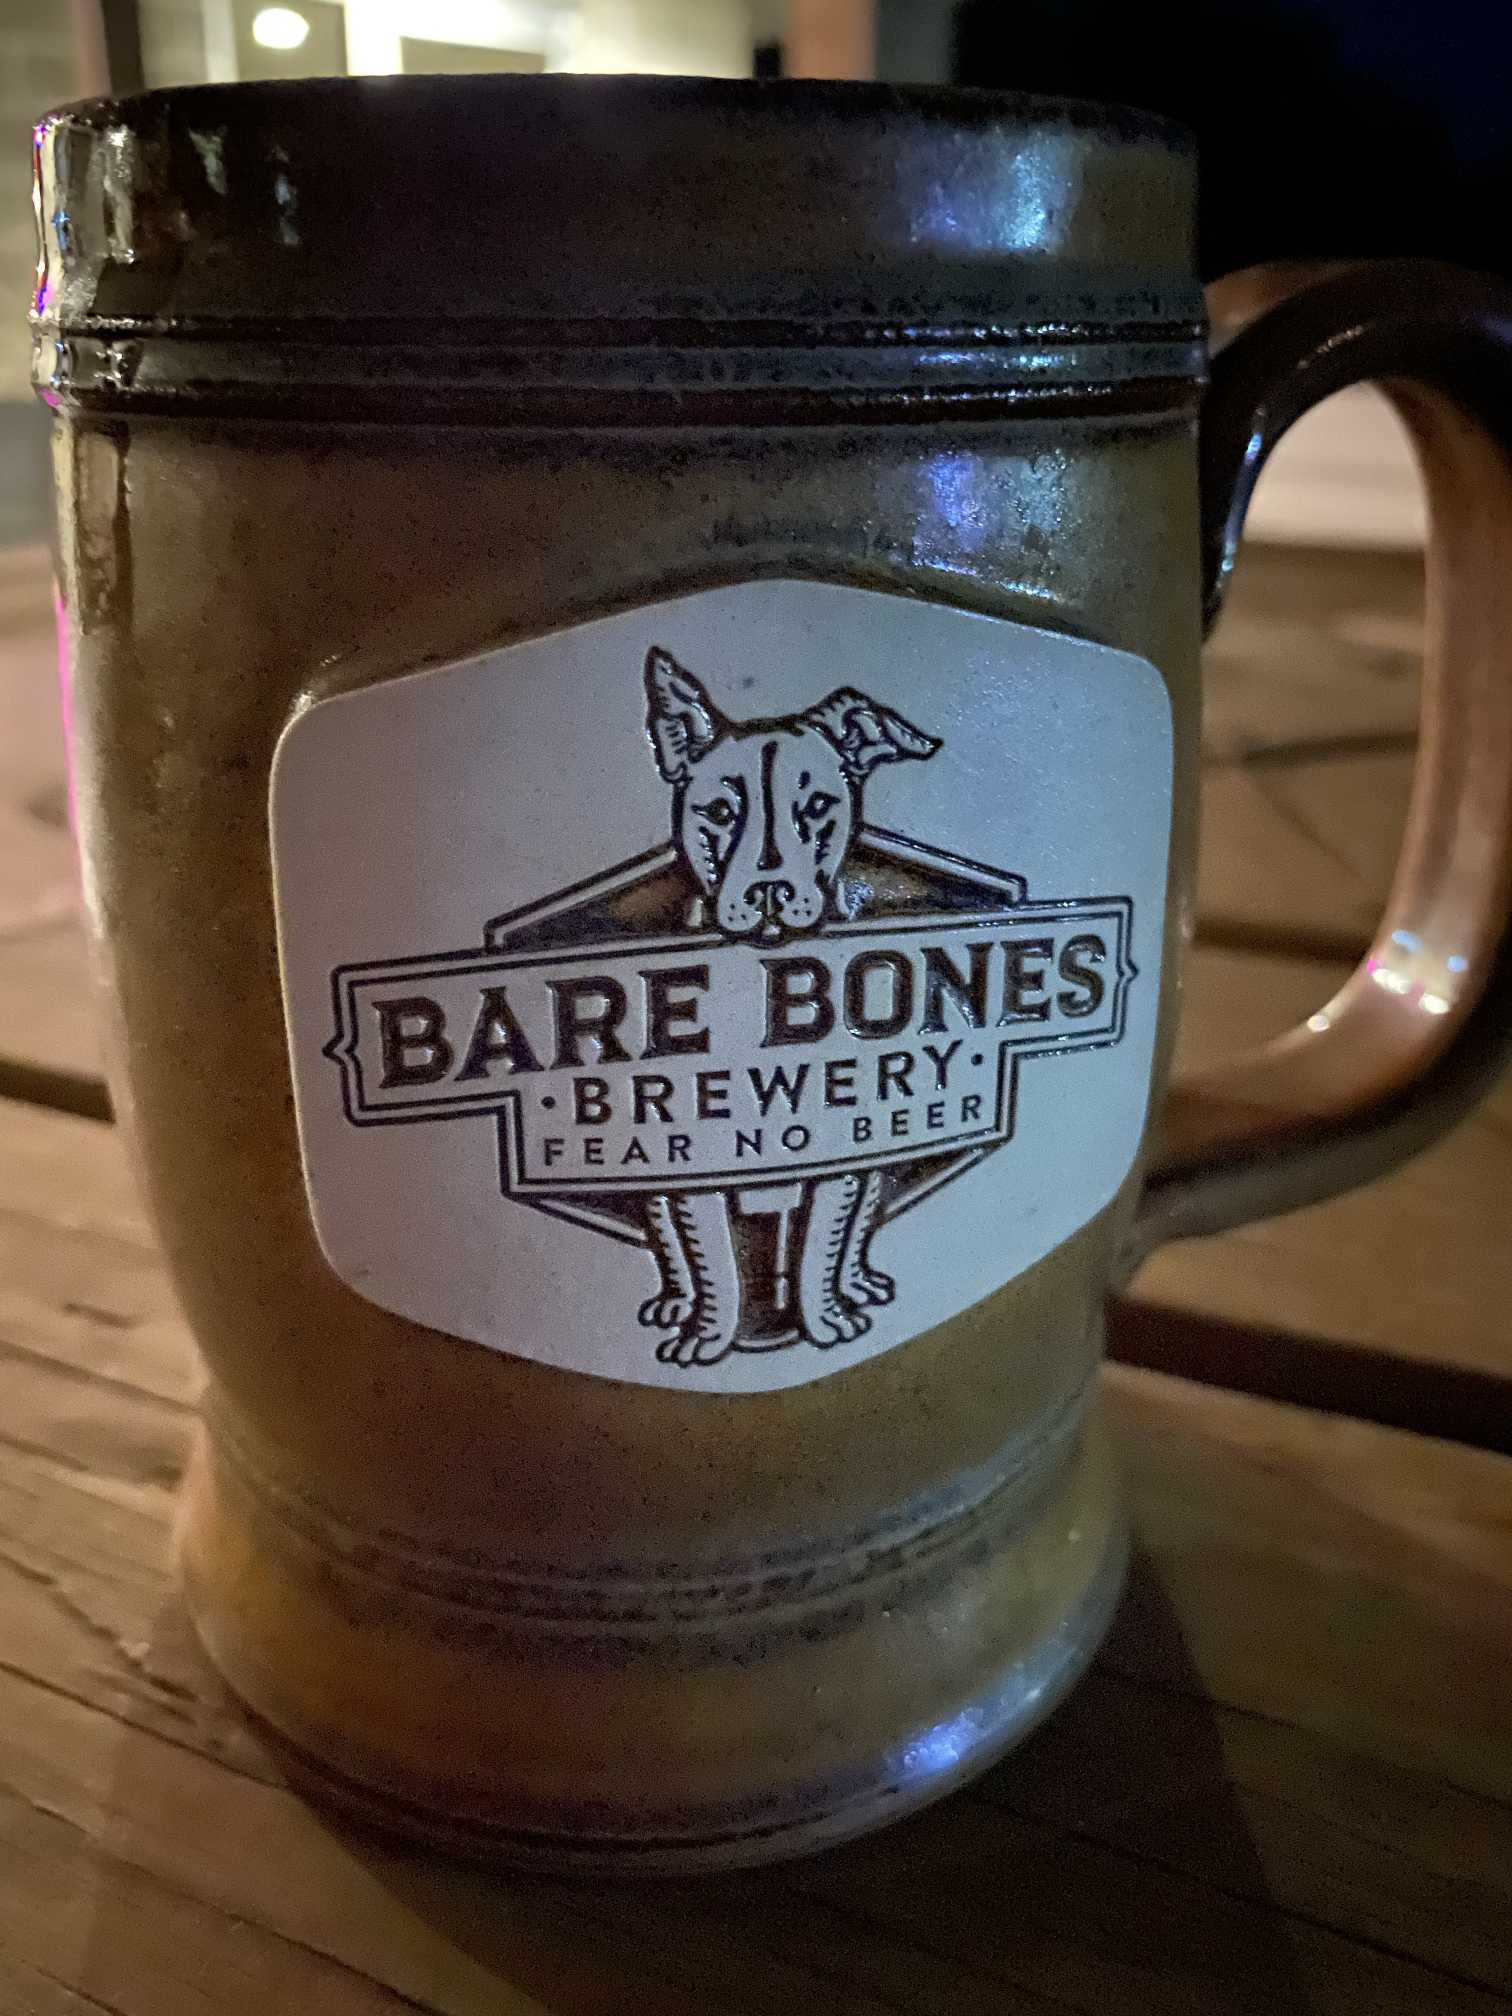 Bare Bones Brewery – Fear No Beer